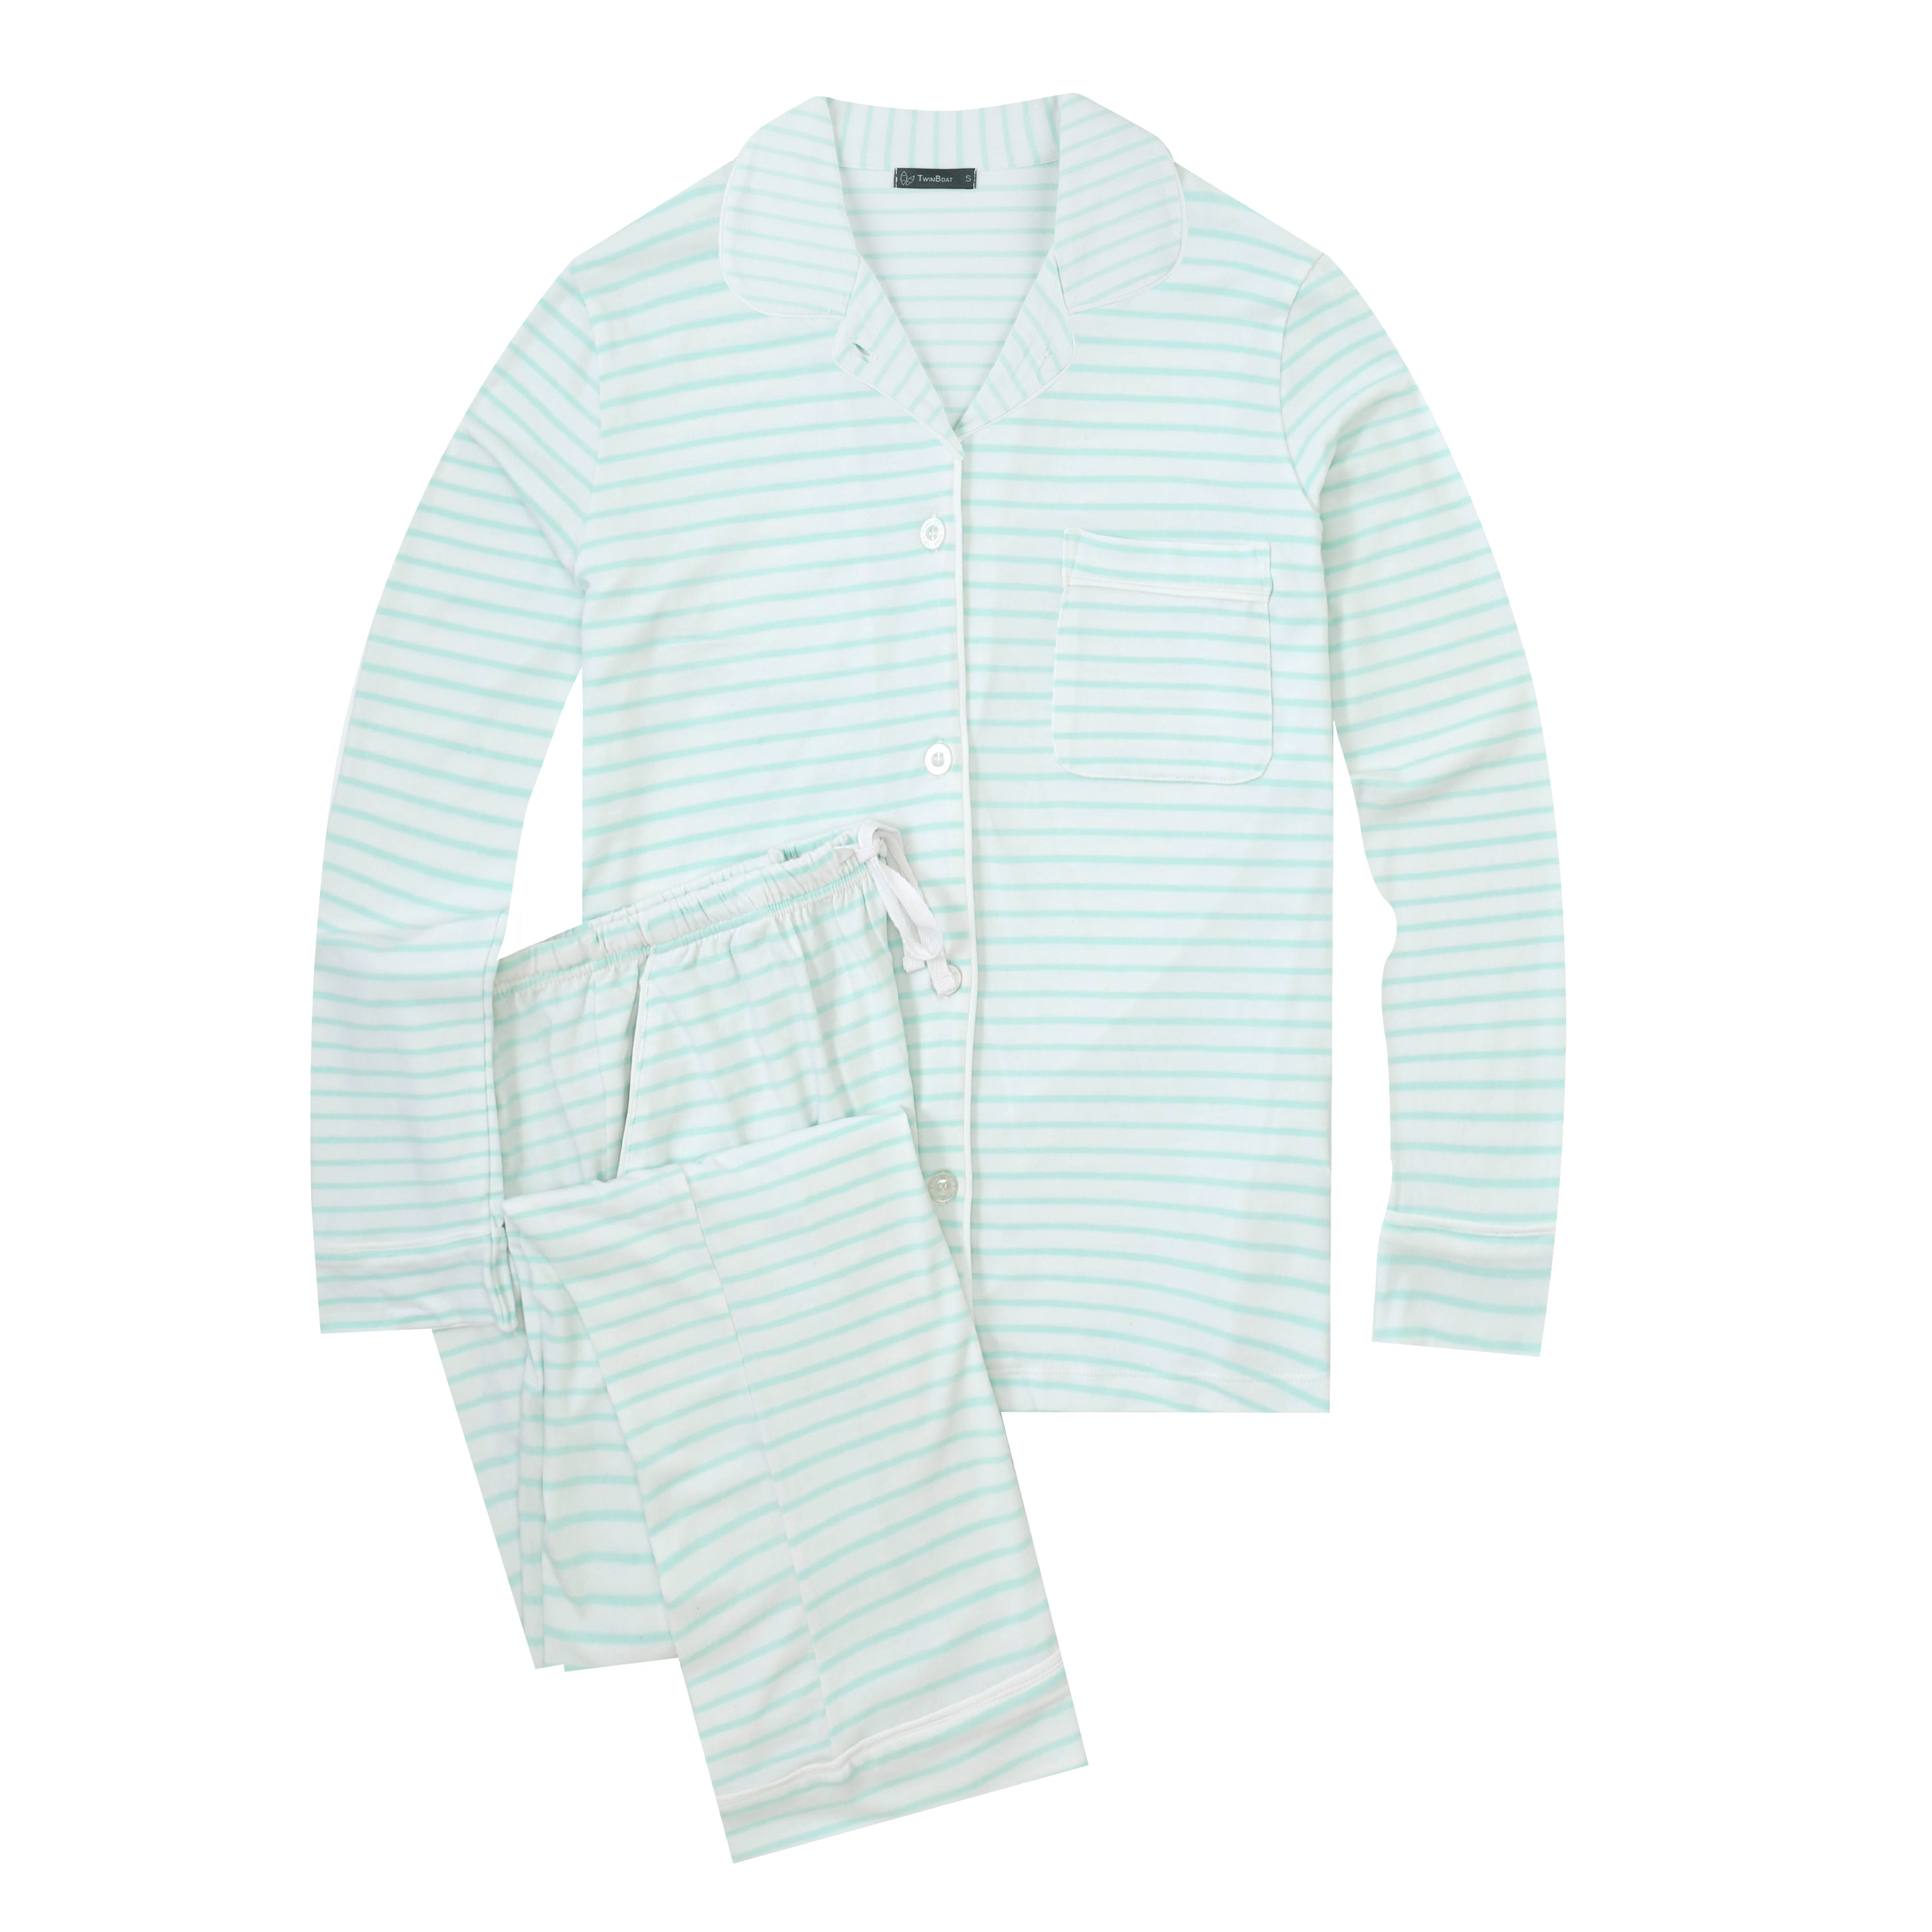 Twin Boat Women's Soft Knit Jersey Pajama Sets